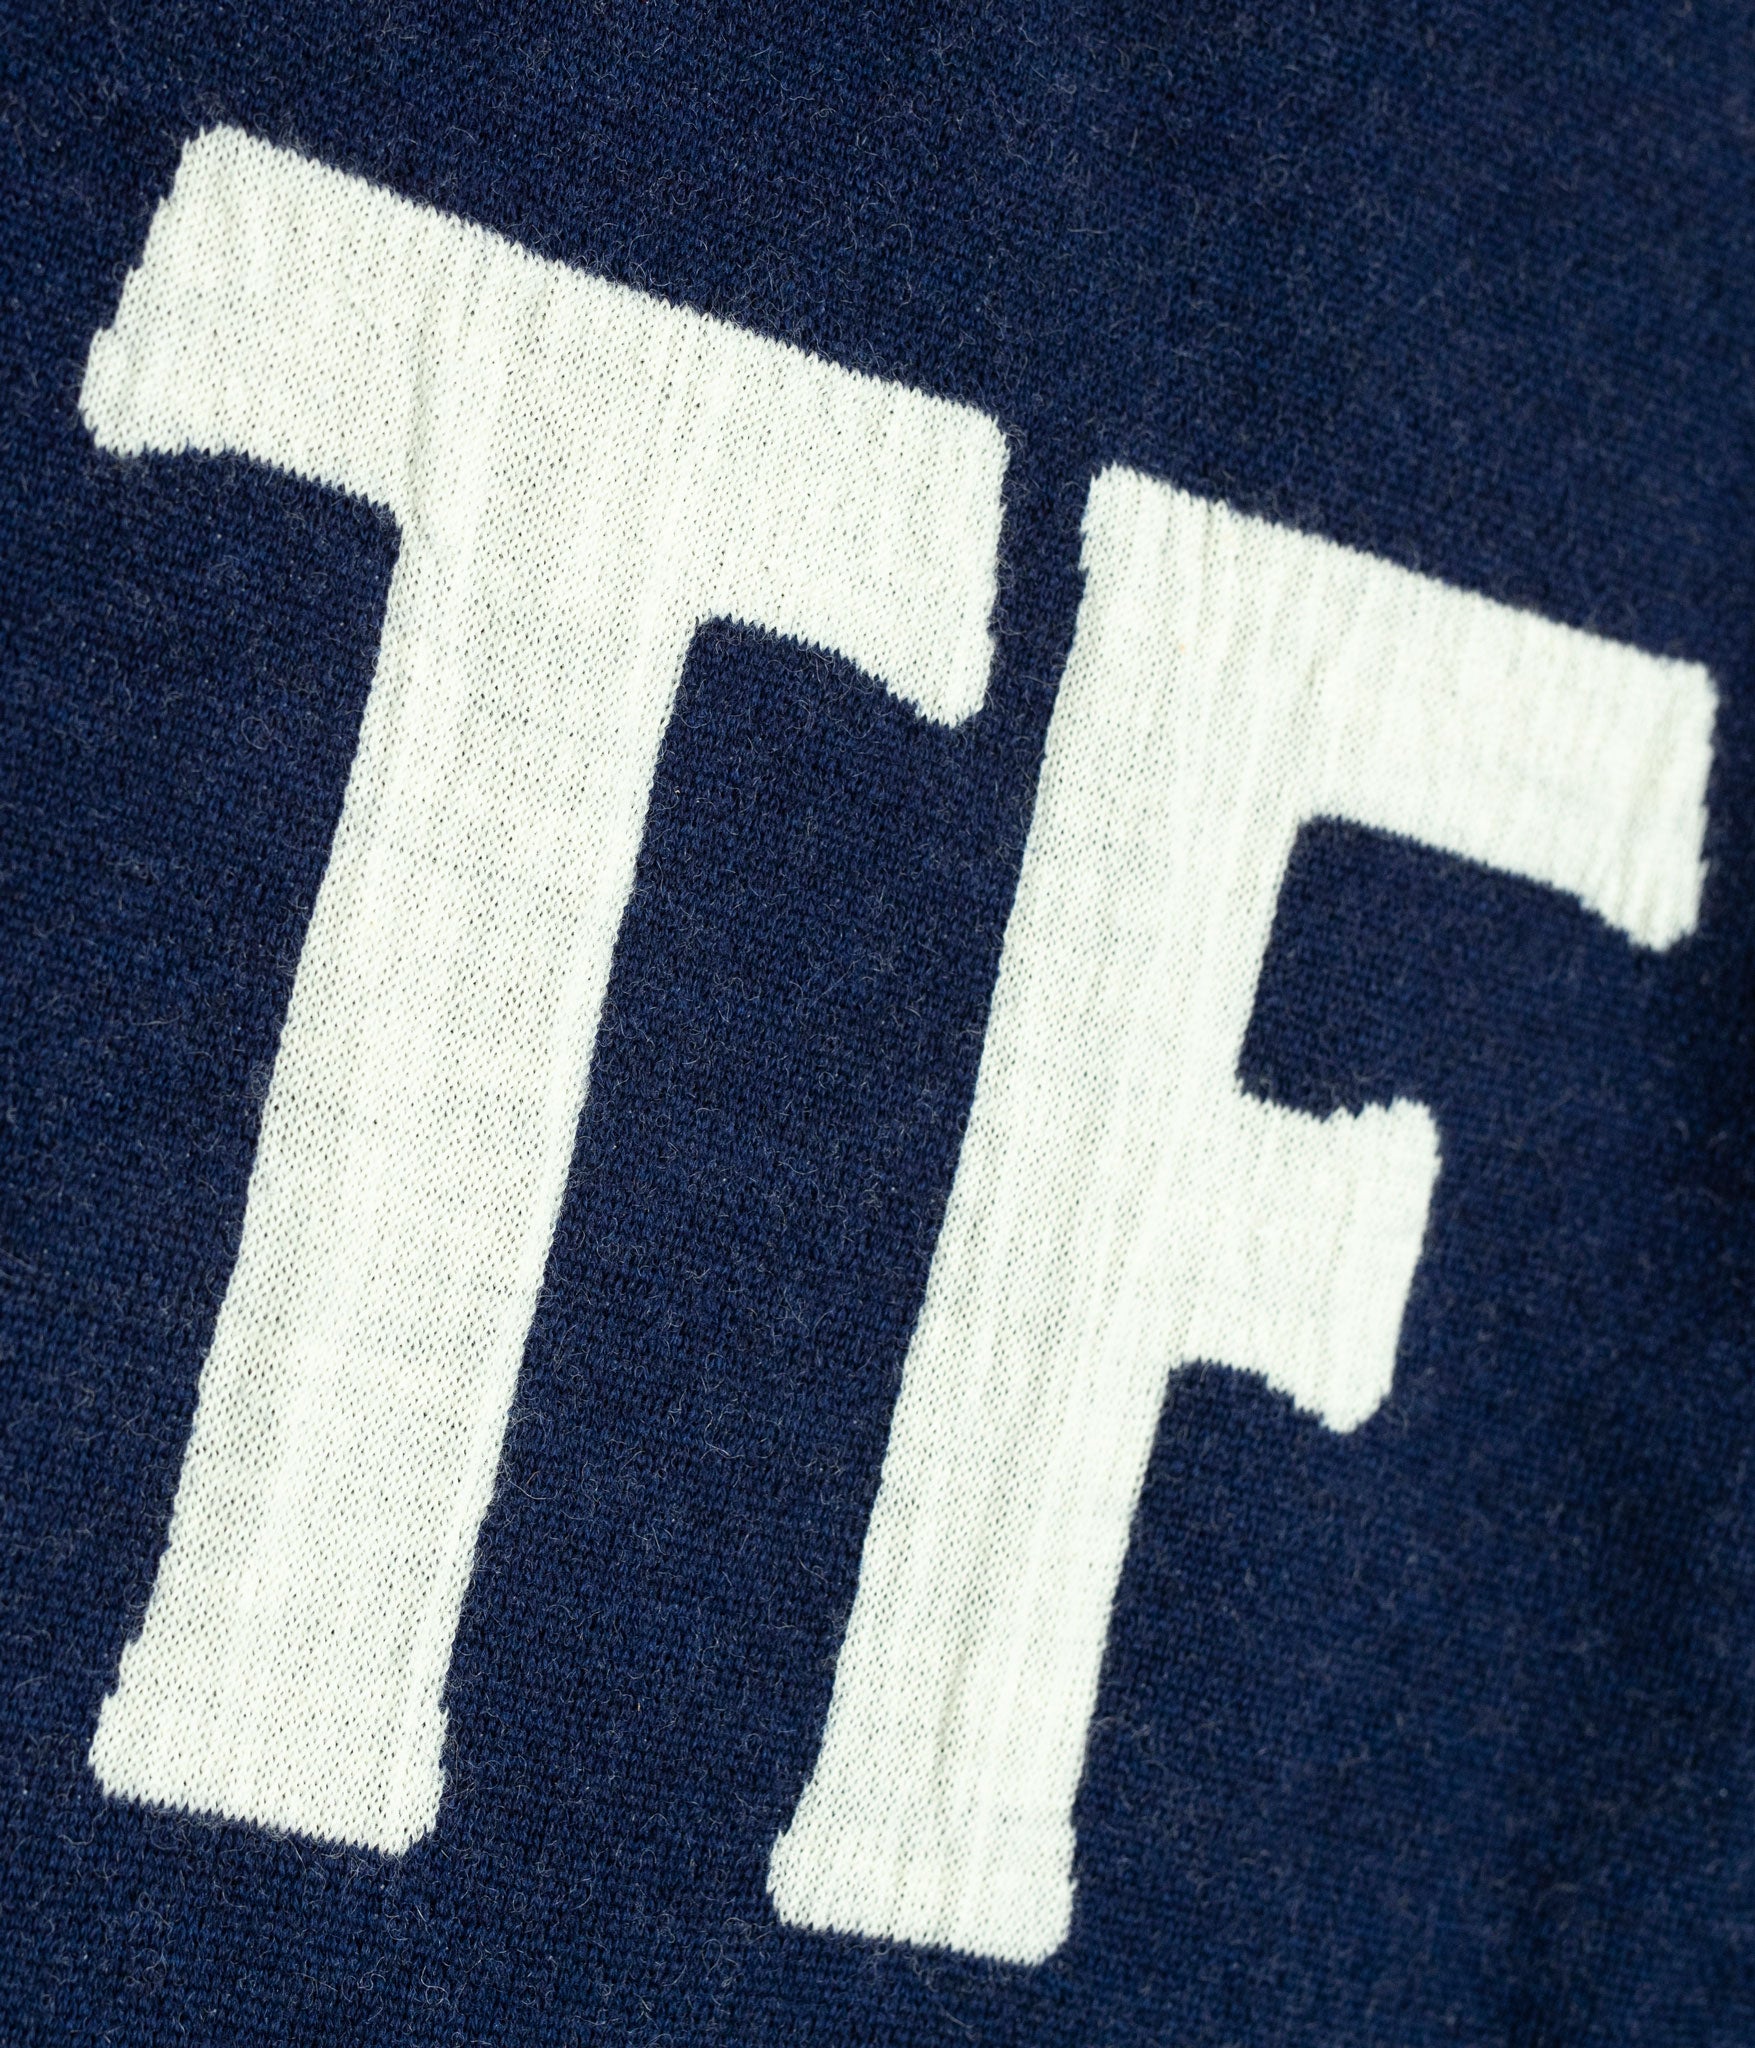 Tonton et Fils - Le pull homme «Molène» marine fabriqué en France - Zoom sur le logo